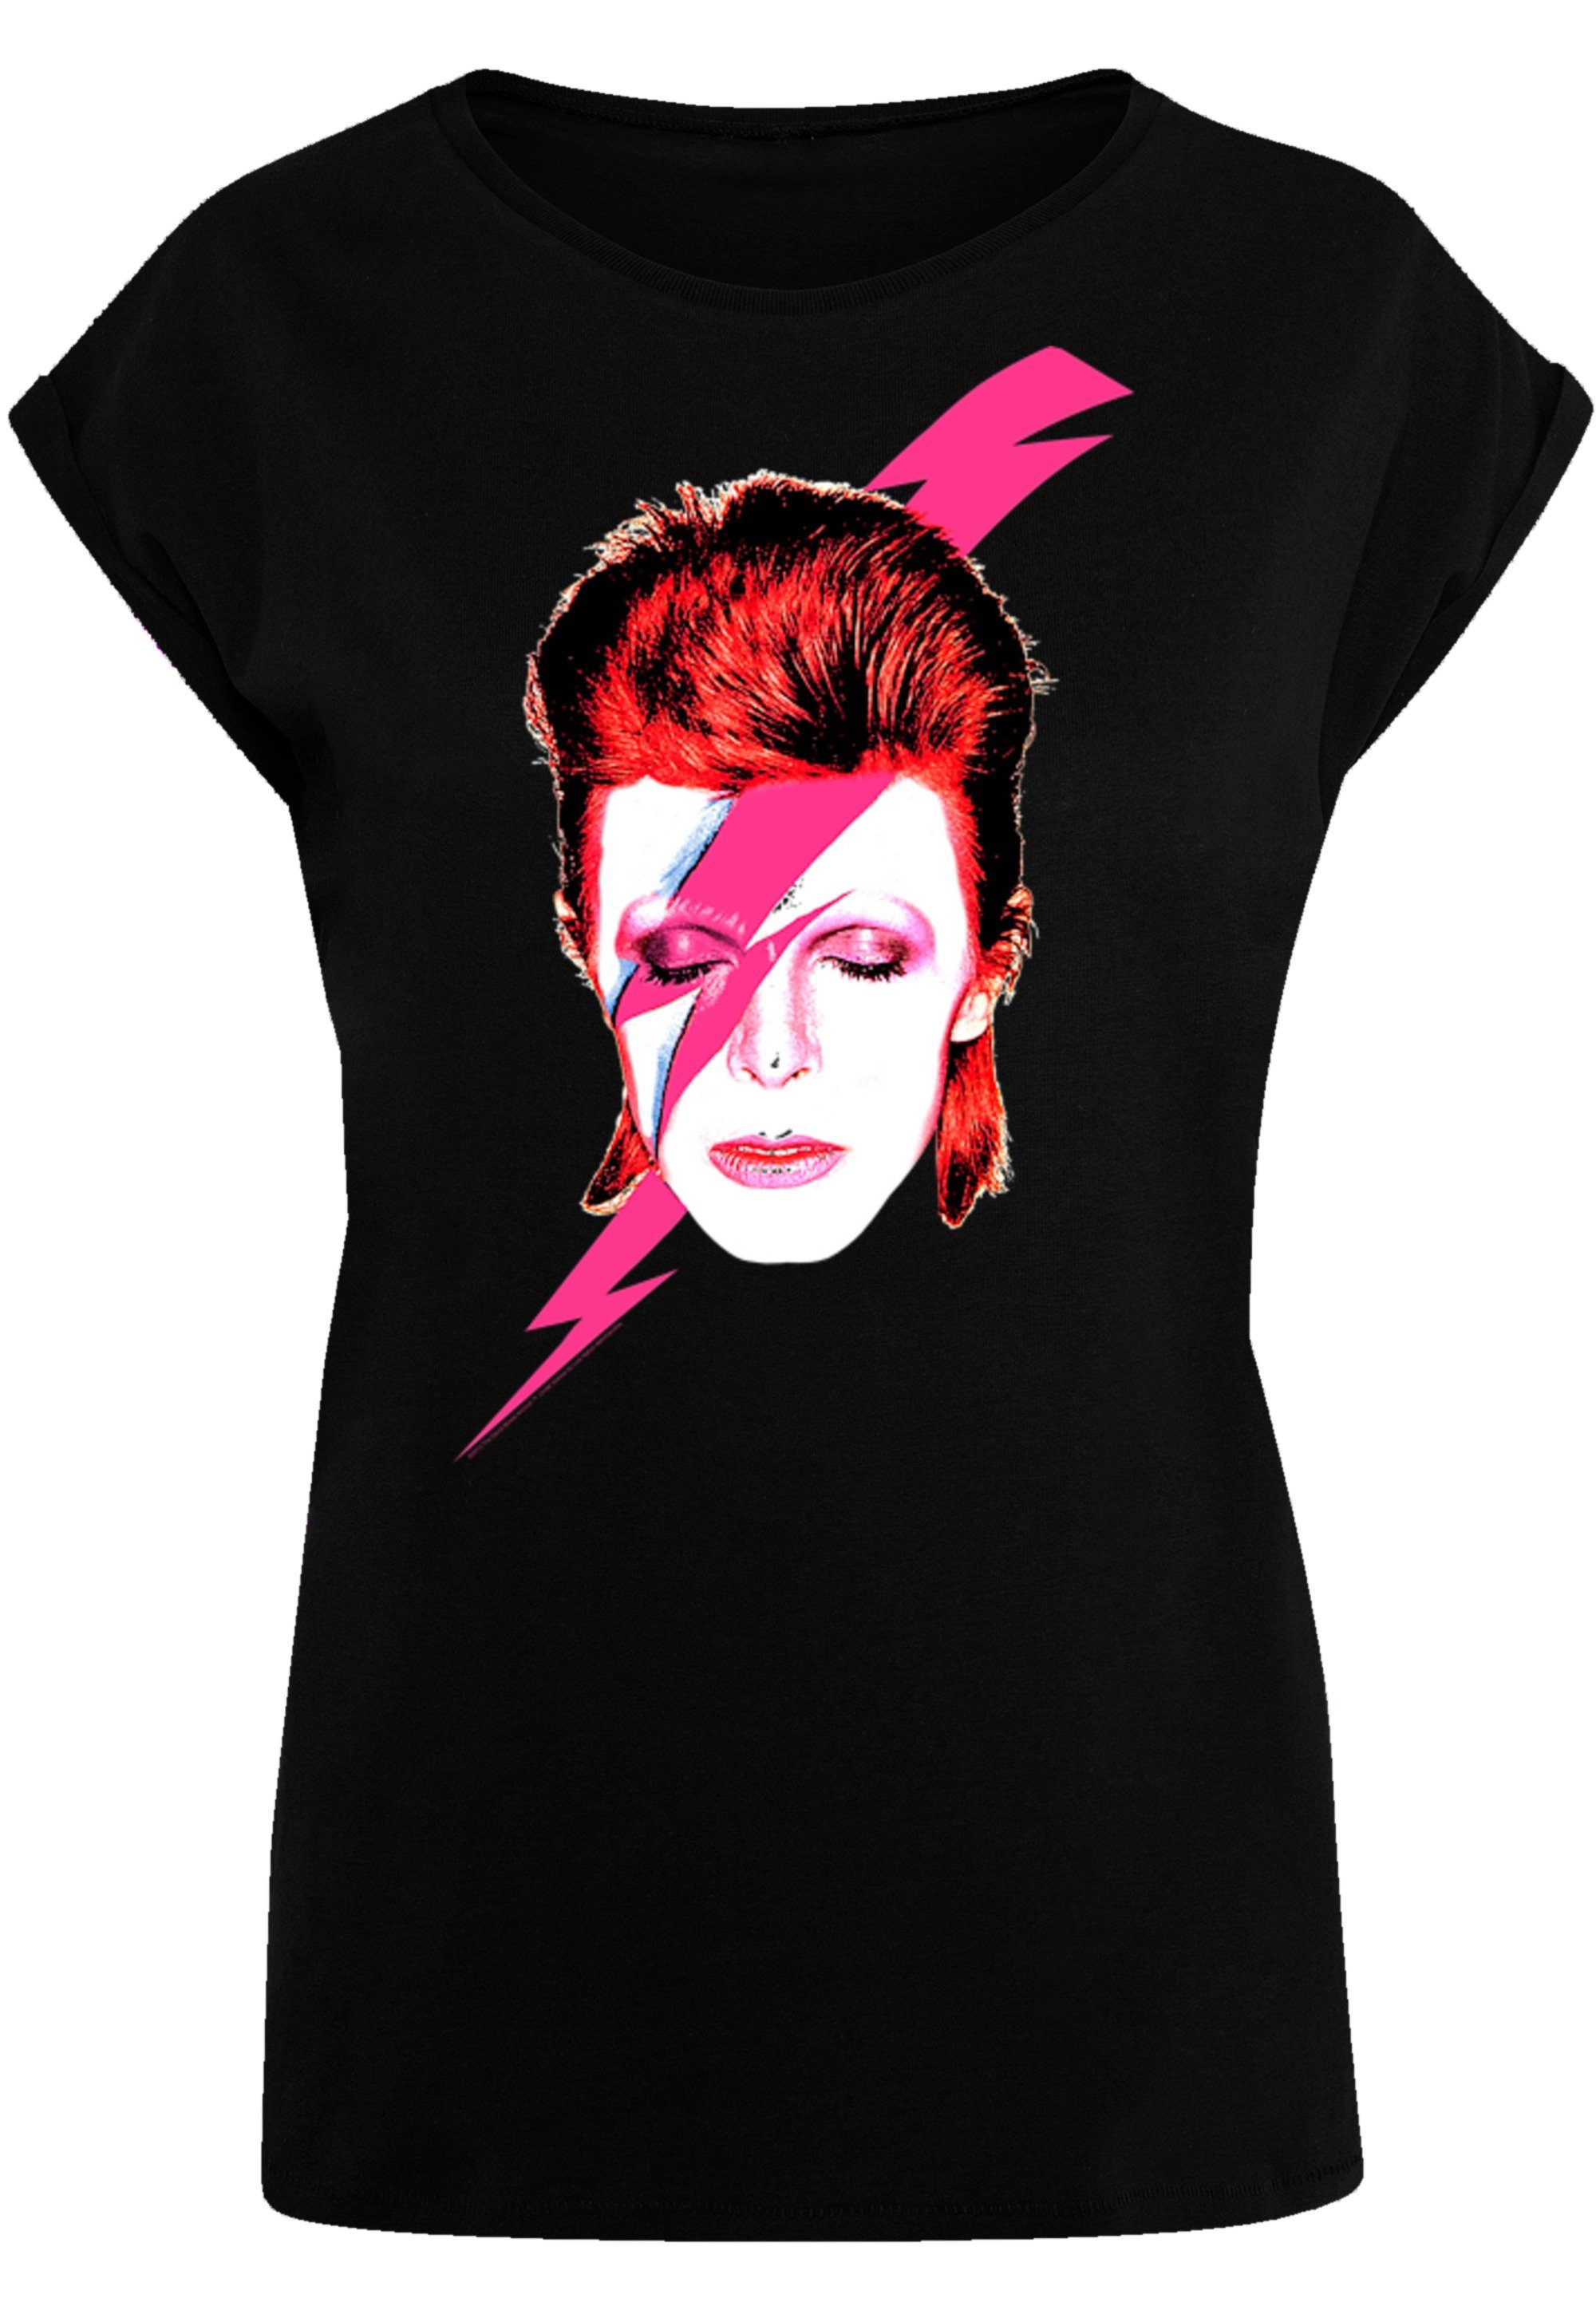 Print, M groß Bowie Model Das Bolt David Größe trägt und ist Sane F4NT4STIC cm T-Shirt 170 Aladdin Lightning